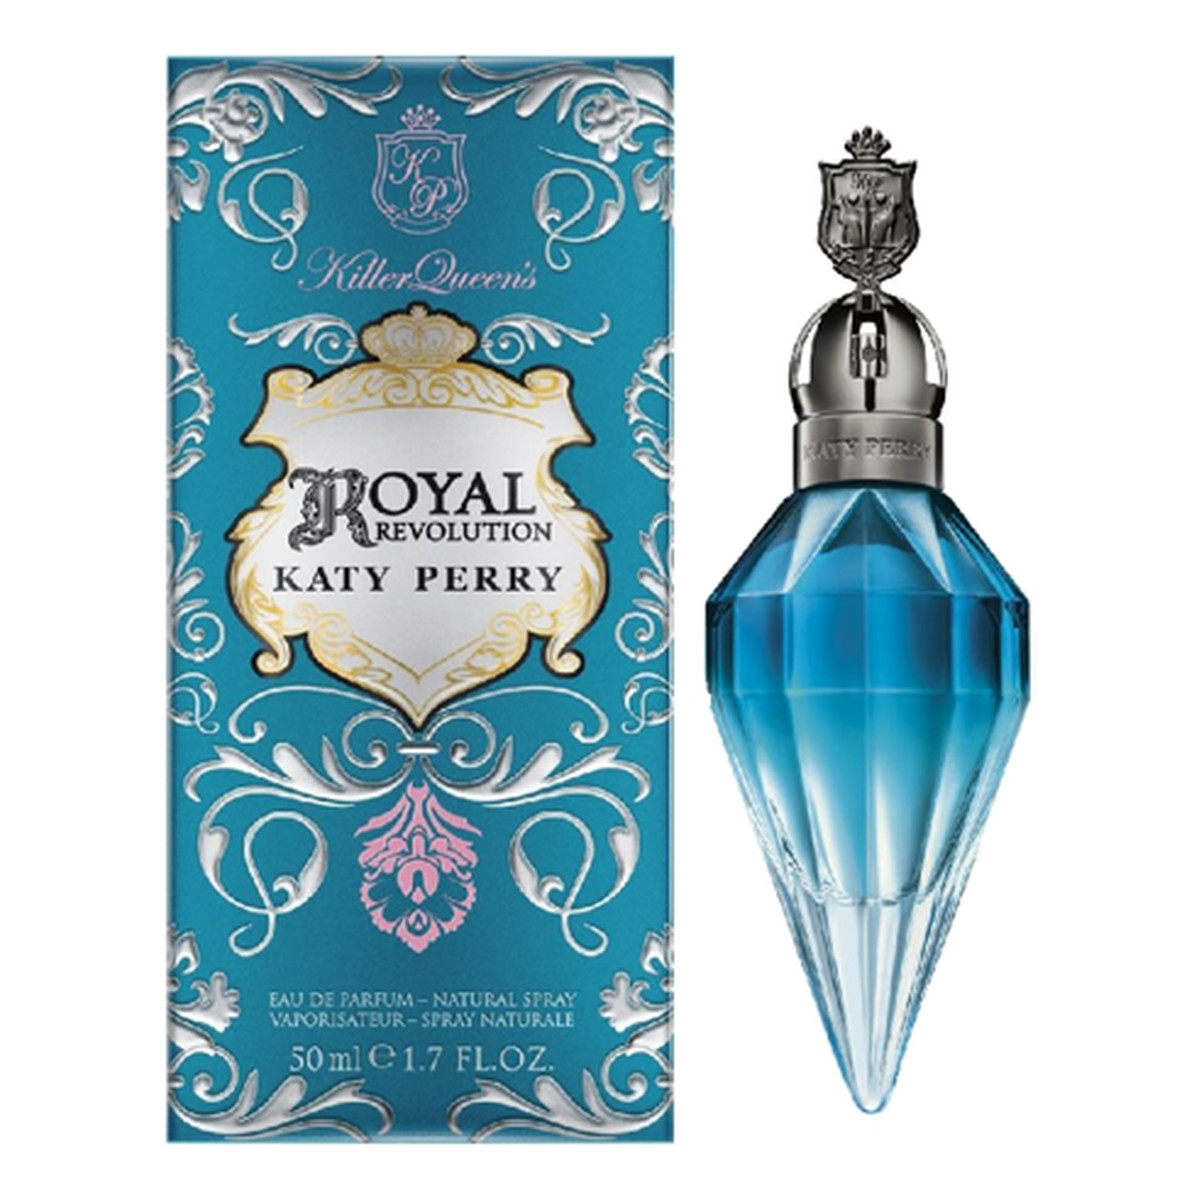 Katy Perry Royal Revolution woda perfumowana 50ml